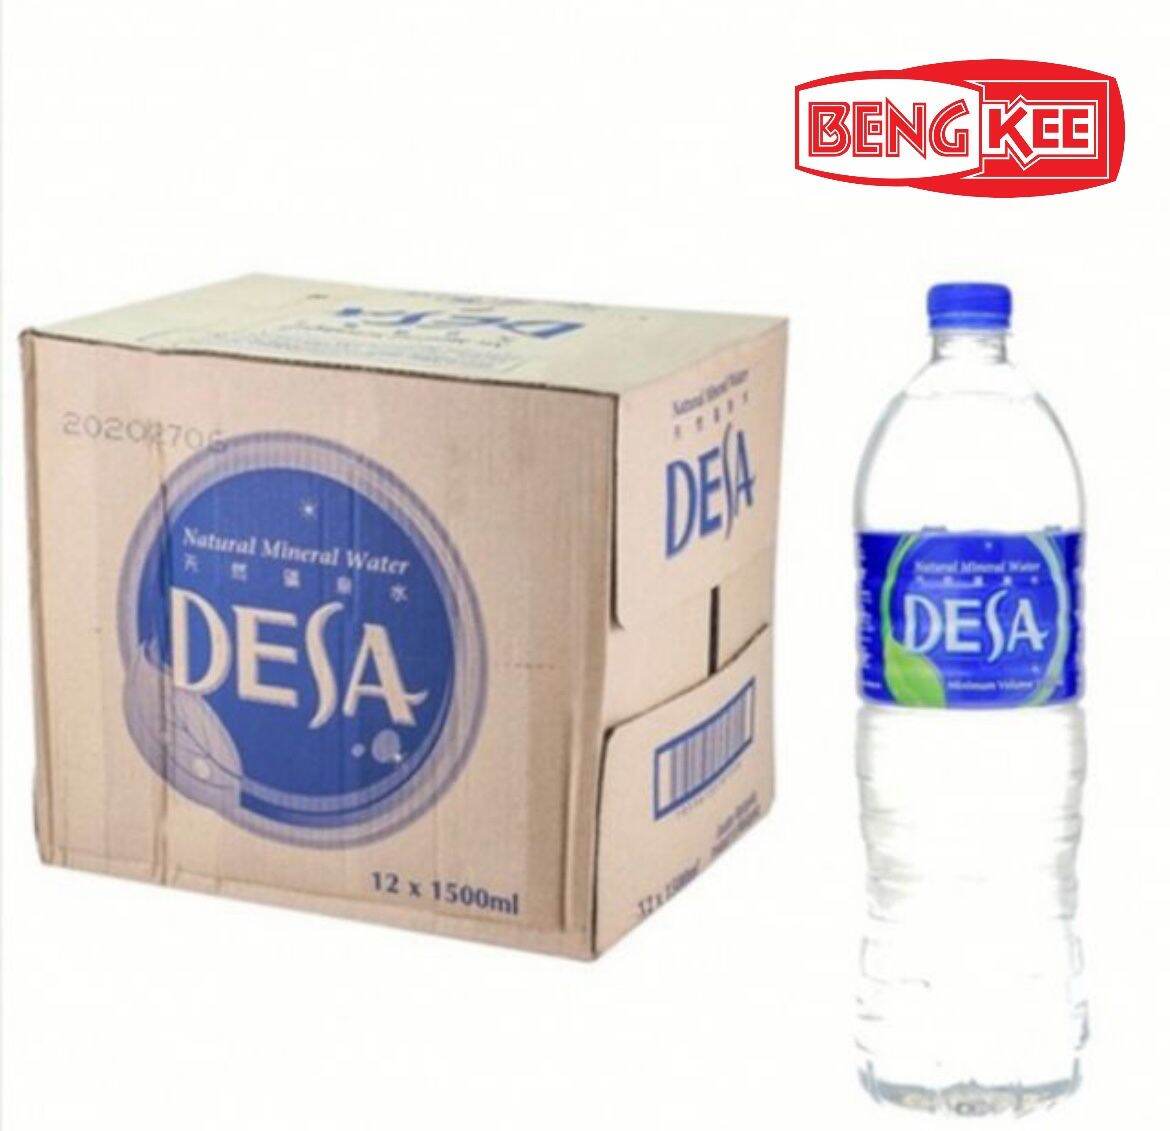 Beng kee🔥Desa Mineral water 1500ml*12pcs🔥